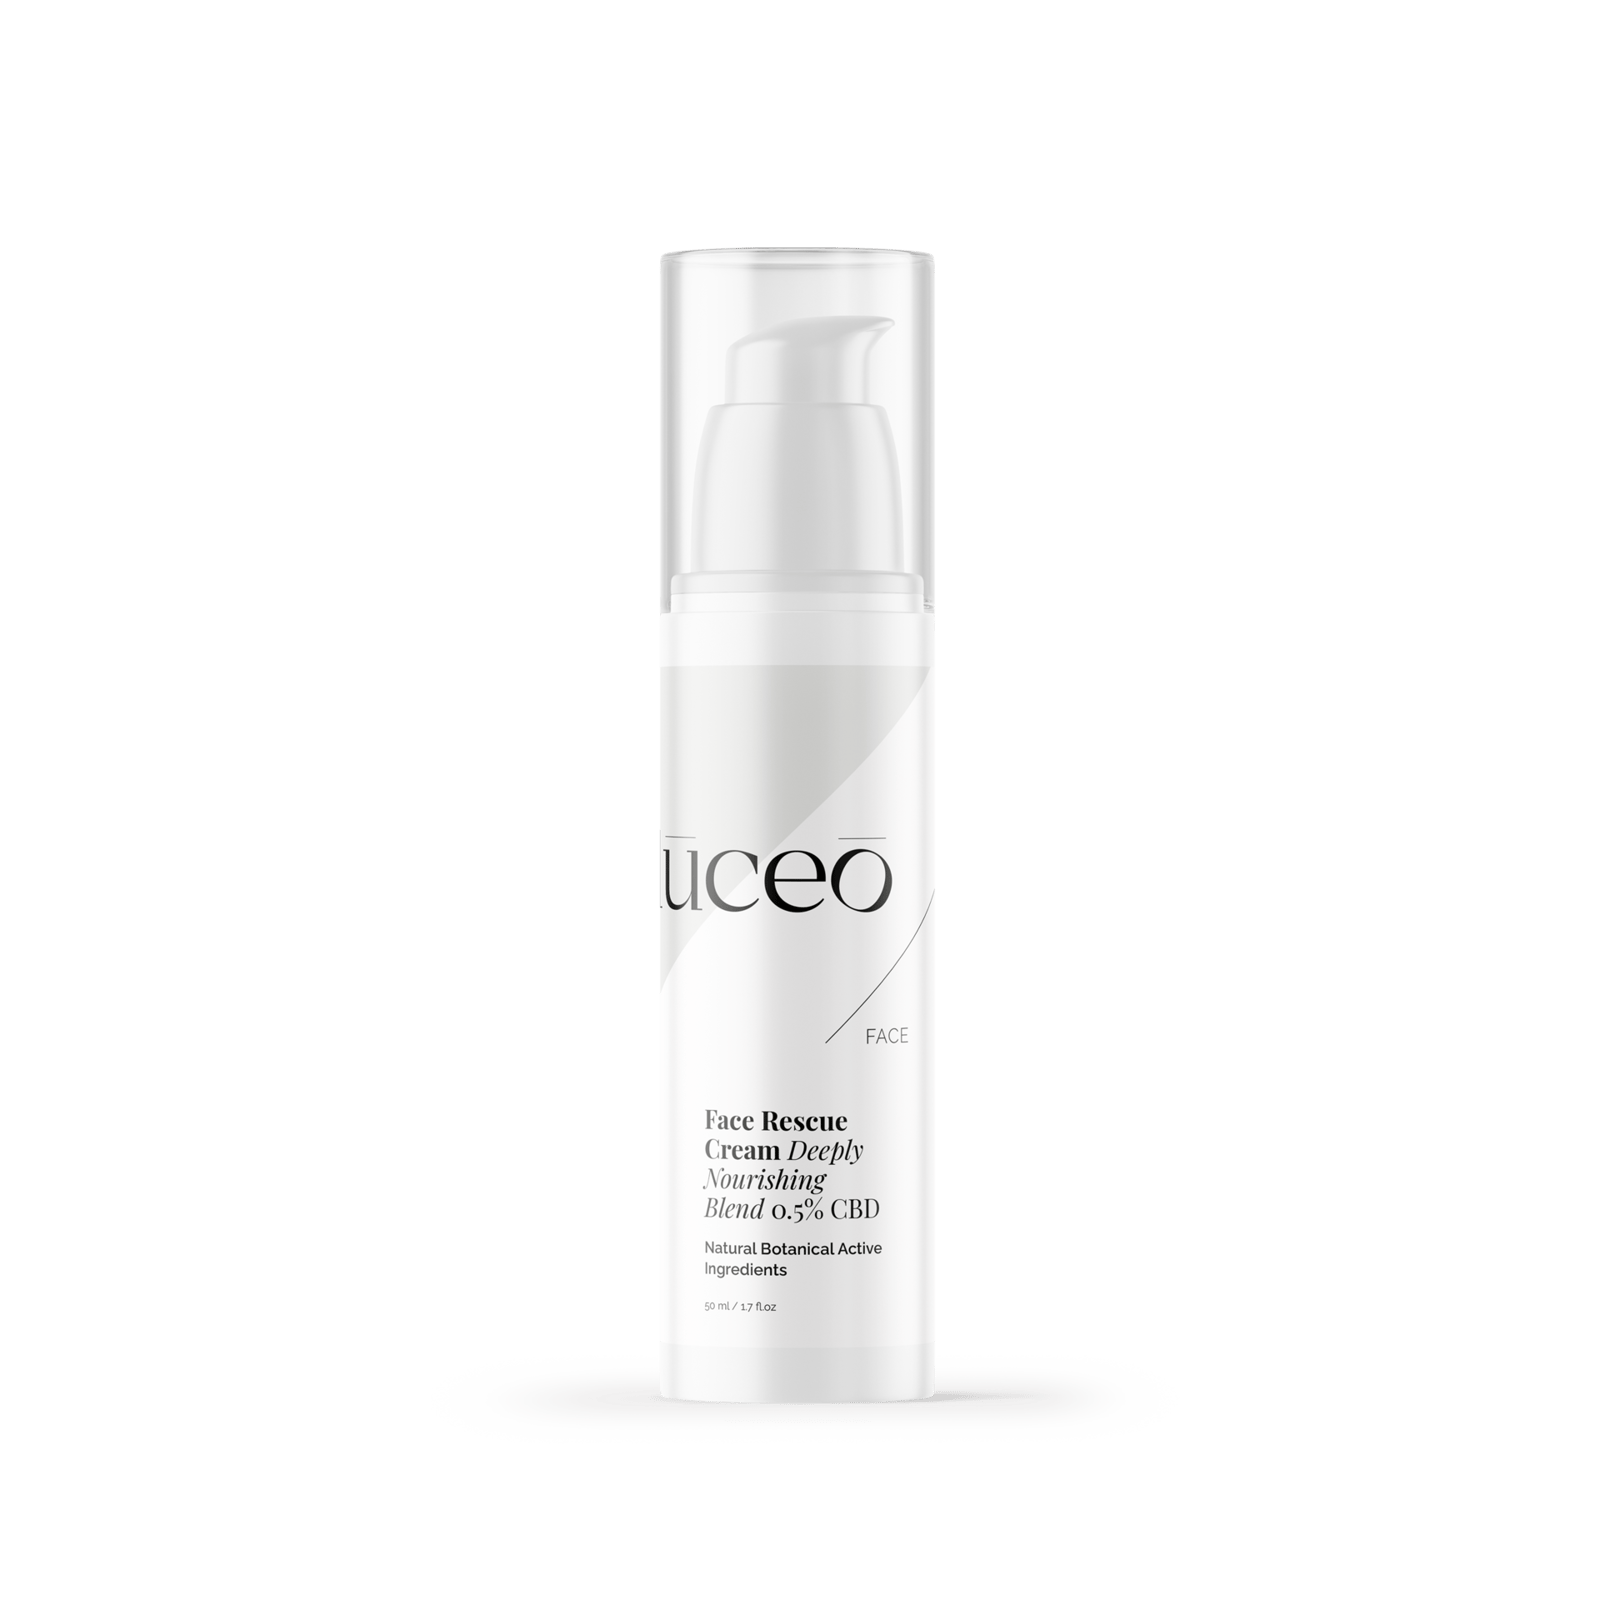 LUCEO Face Rescue Cream - Unisex Day Cream 50 ml